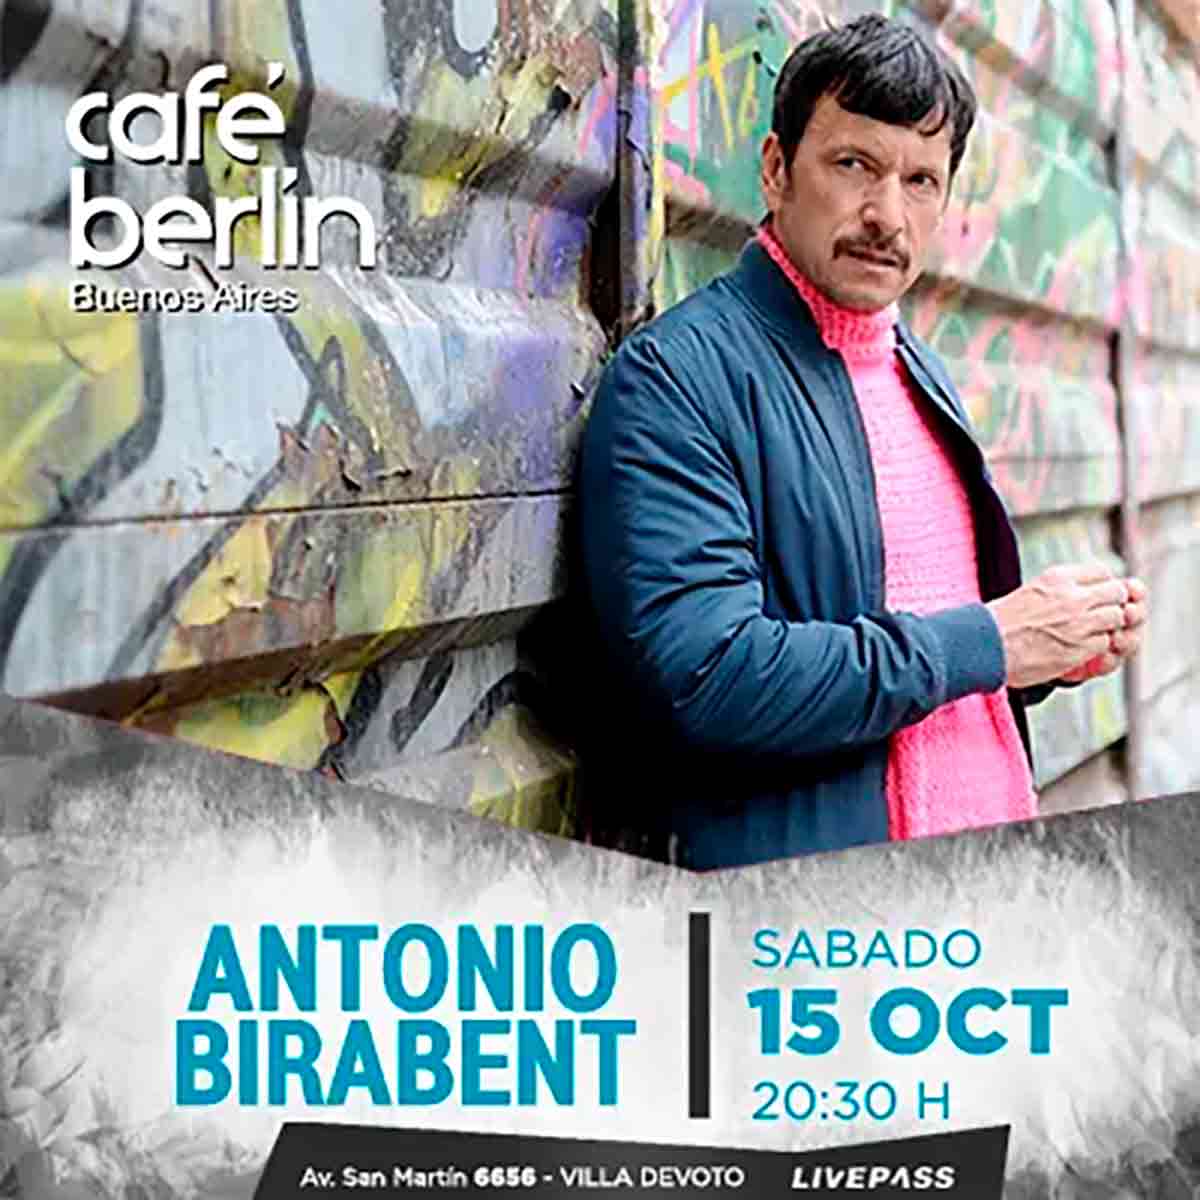 Antonio Birabent anuncia show en Café Berlín